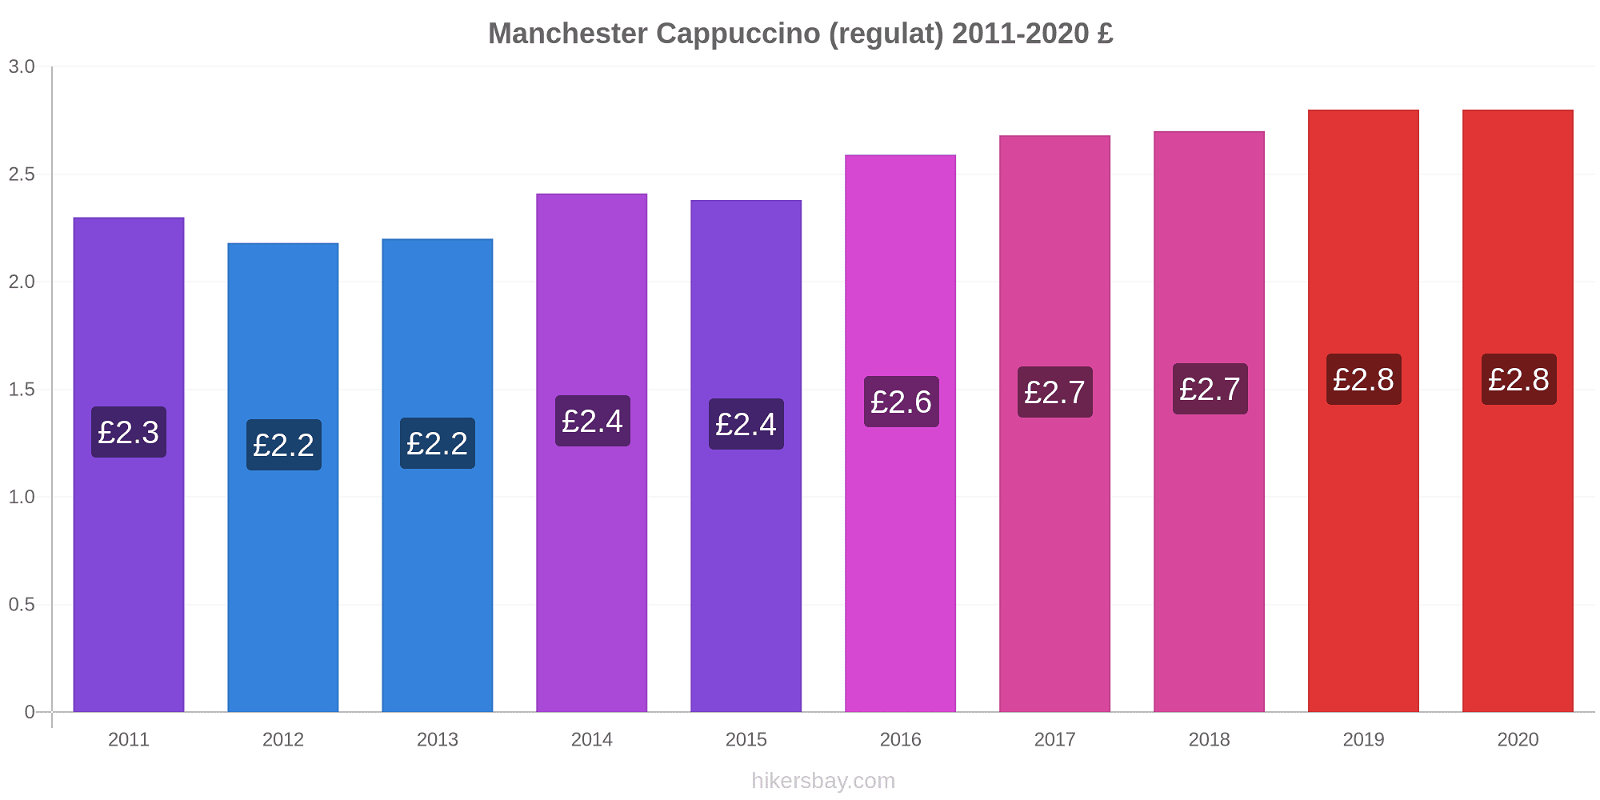 Manchester modificări de preț Cappuccino (regulat) hikersbay.com